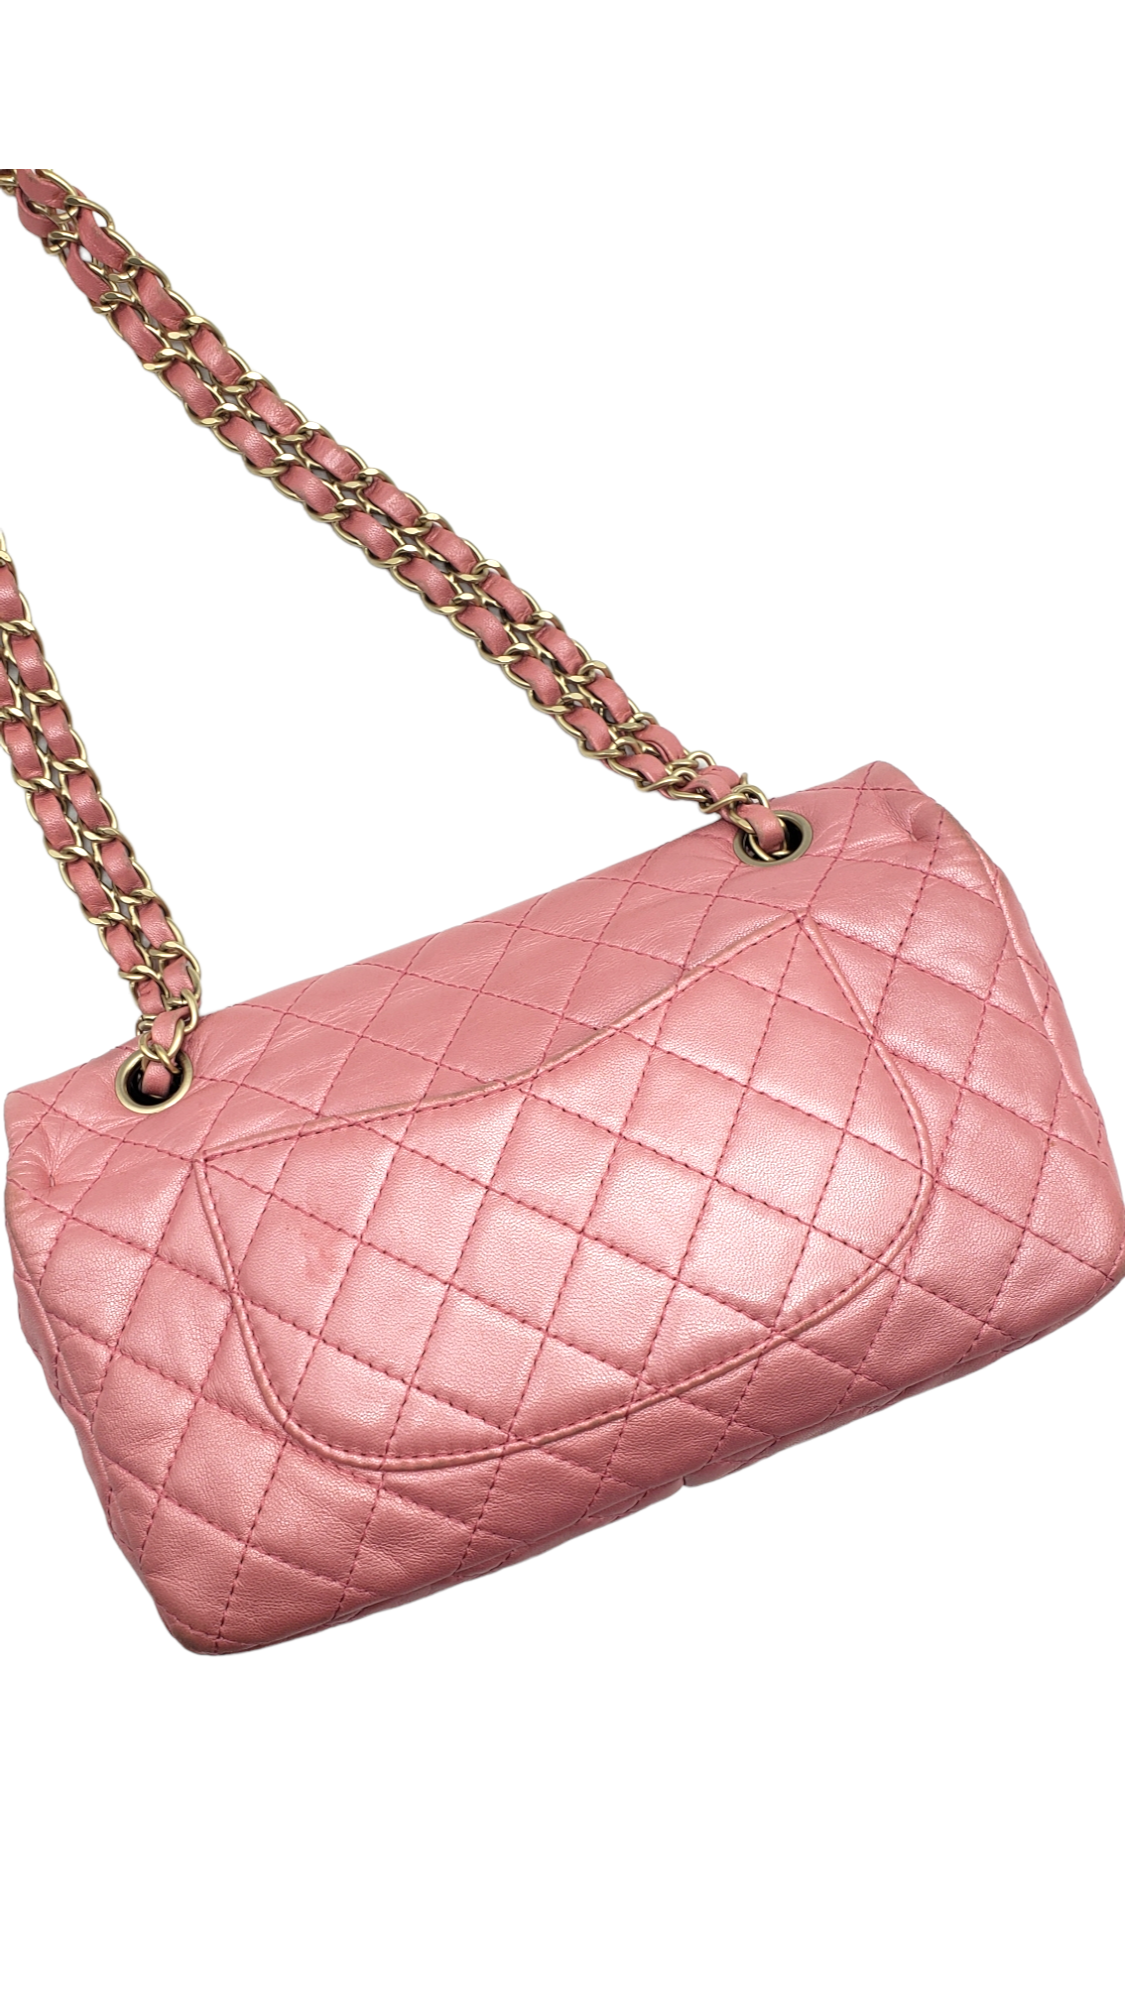 Chanel Pink 2010-2011 Lambskin Precious Jewel Flap Bag